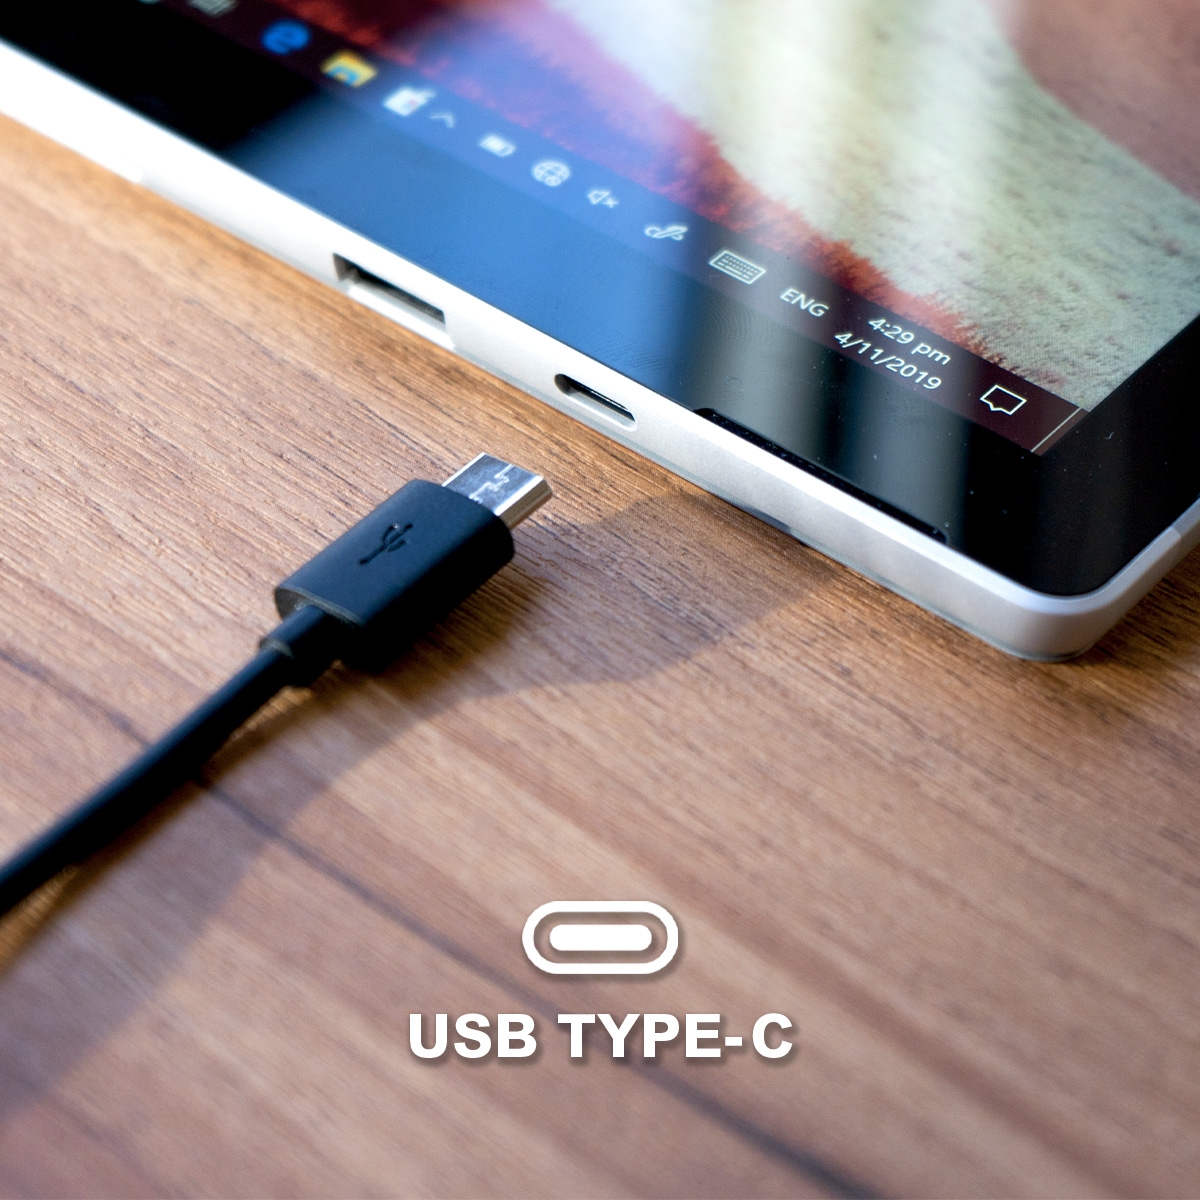 新增 USB Type-C 連接埠，大大方便用家。